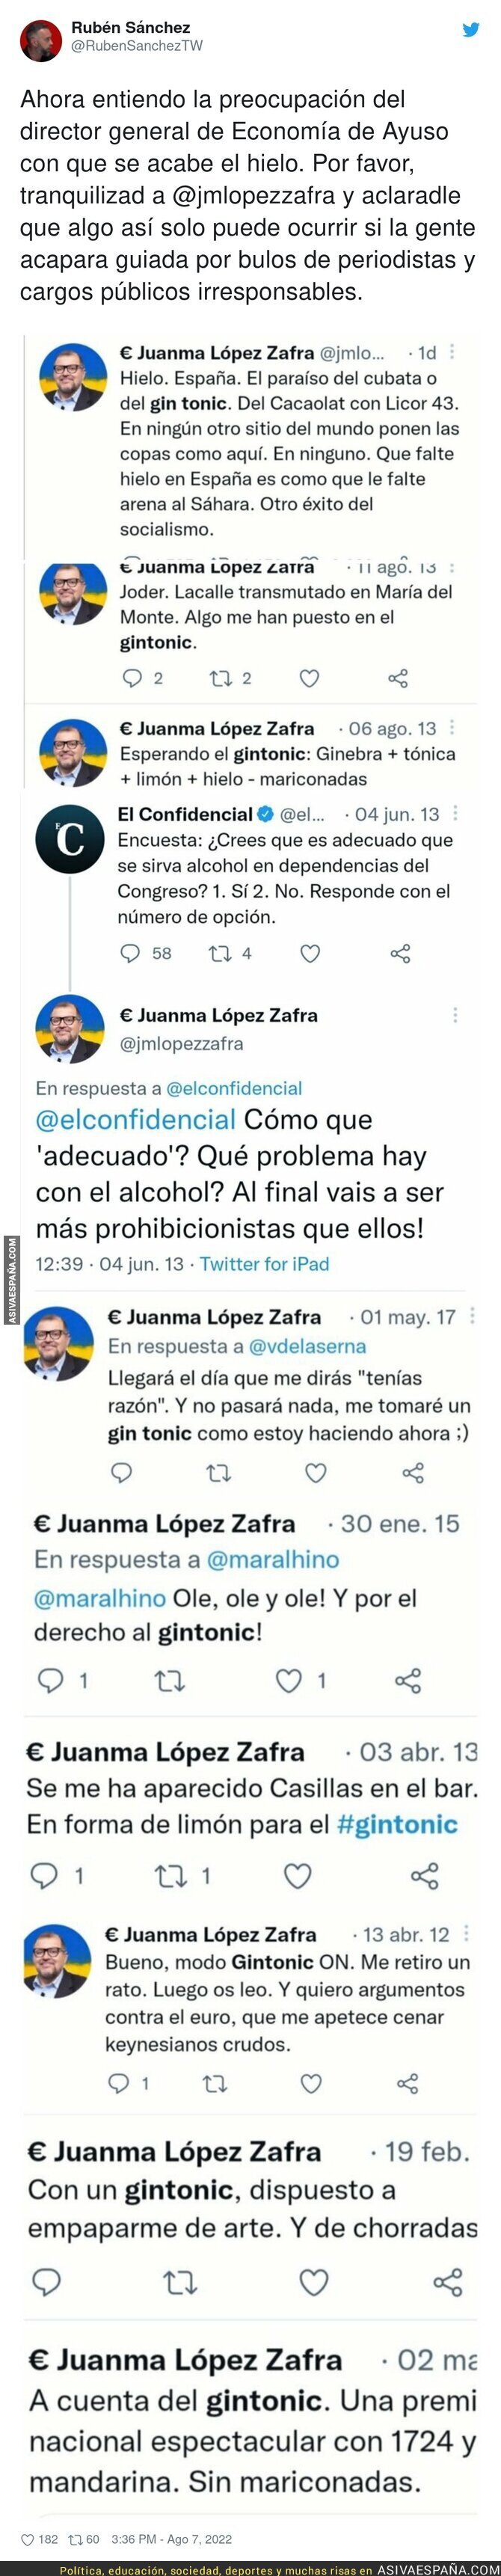 Juanma López Zafra tiene un problema con el alcohol